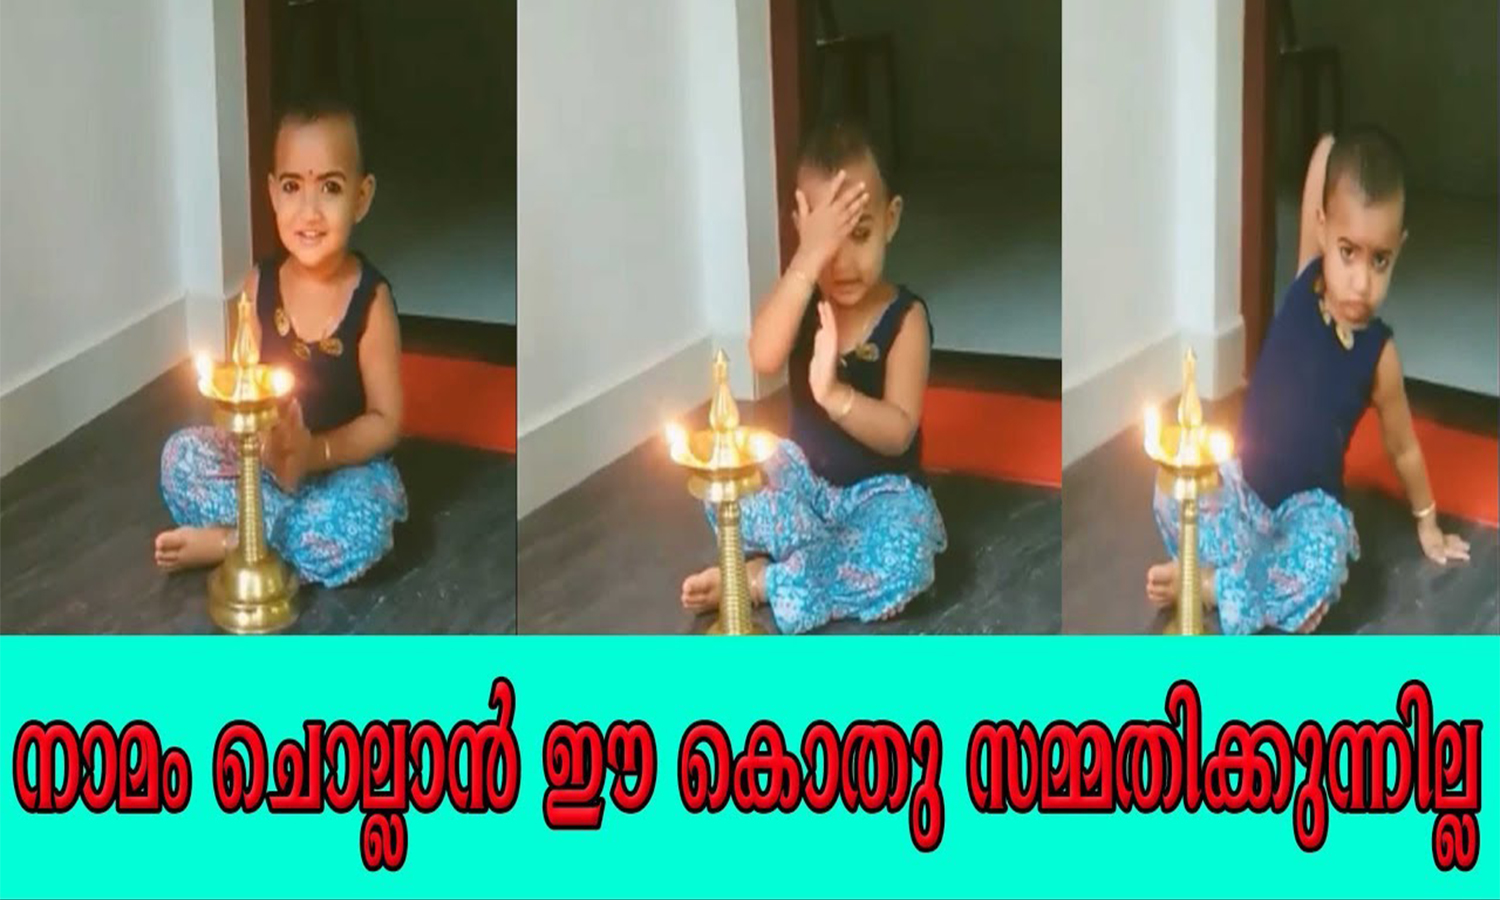 Baby Praying Video Goes Viral